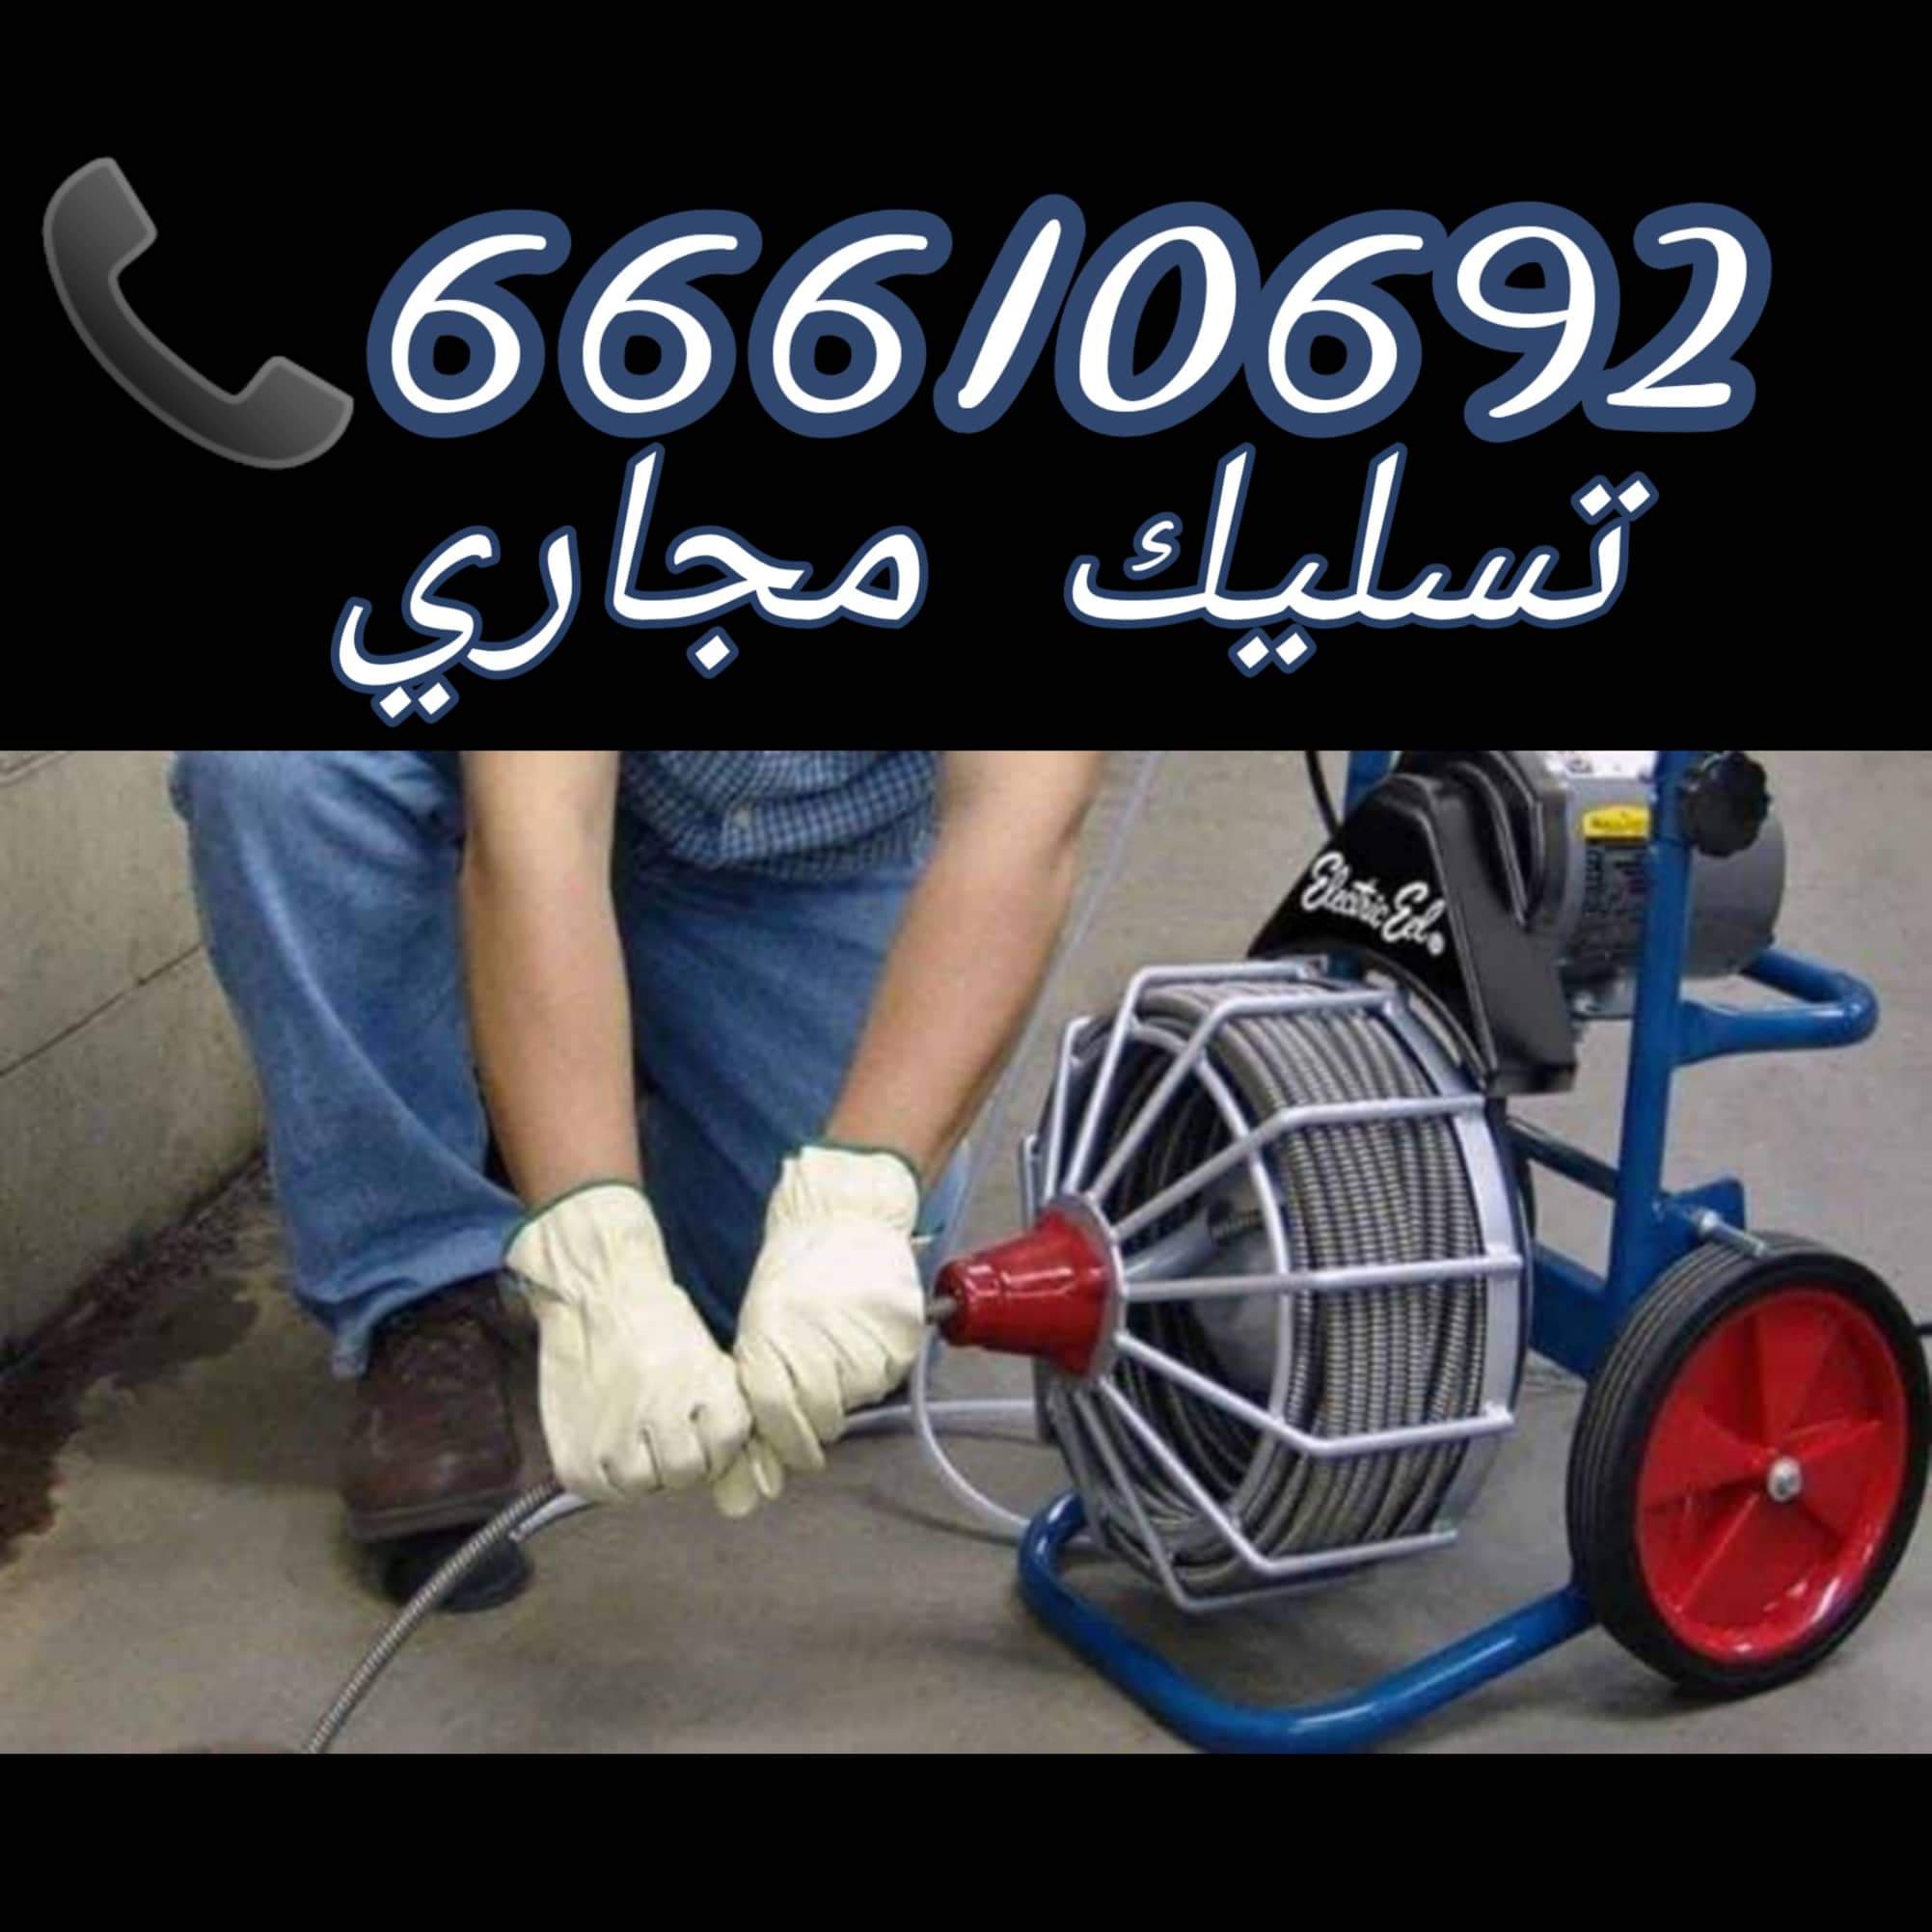 تسليك مجاري المهبولة / 66610692 / صيانة وتركيب ادوات صحية الكويت